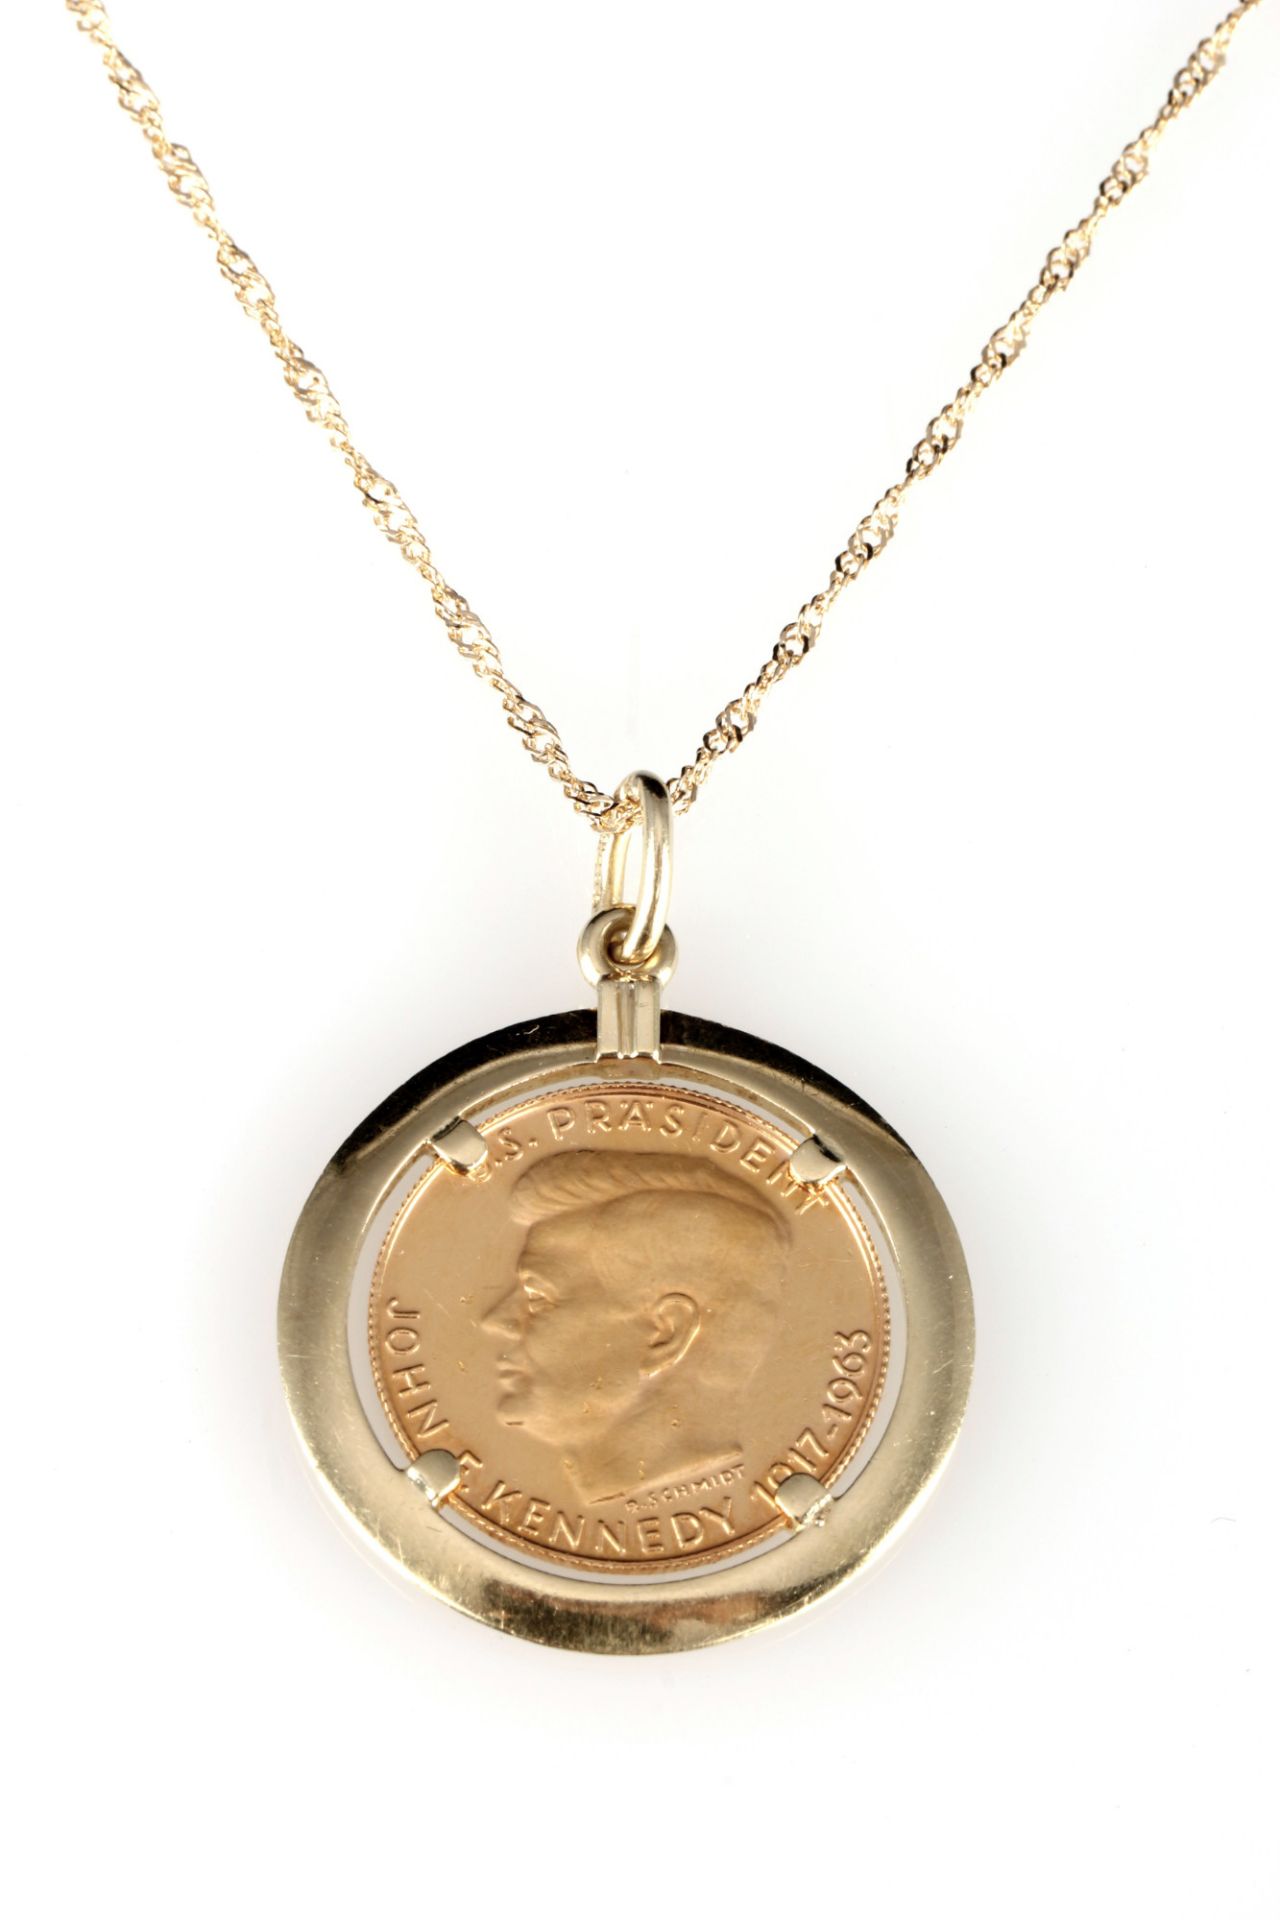 900 Gold J.F. Kennedy Medaille an 750 Gold Halskette, 21,6K gold medal on18K gold necklace,